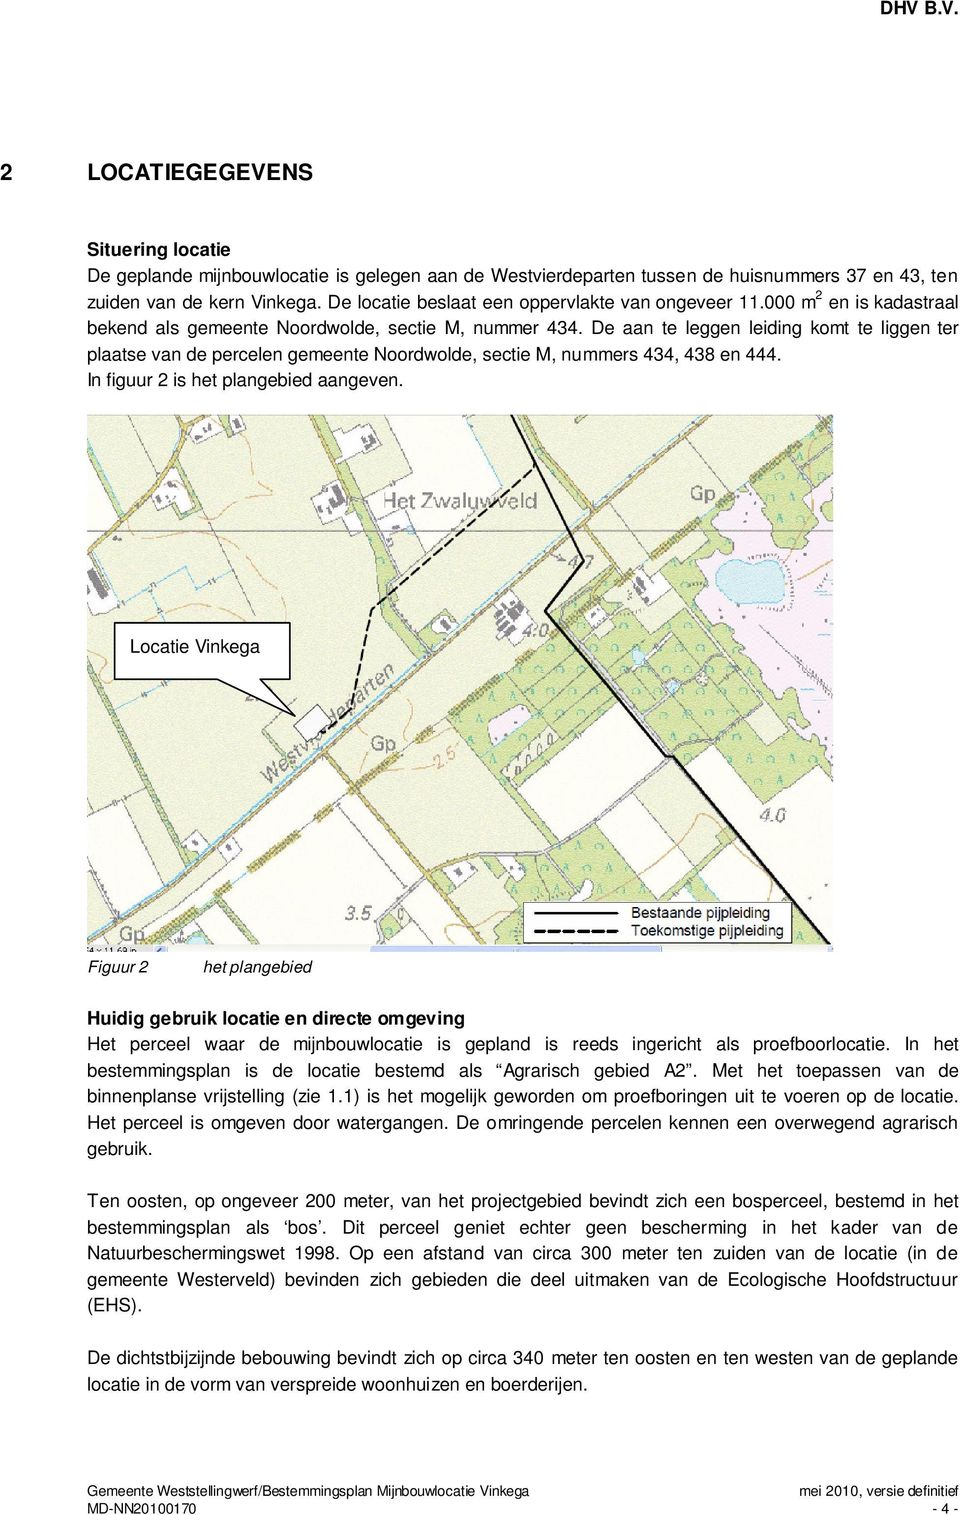 De aan te leggen leiding komt te liggen ter plaatse van de percelen gemeente Noordwolde, sectie M, nummers 434, 438 en 444. In figuur 2 is het plangebied aangeven.